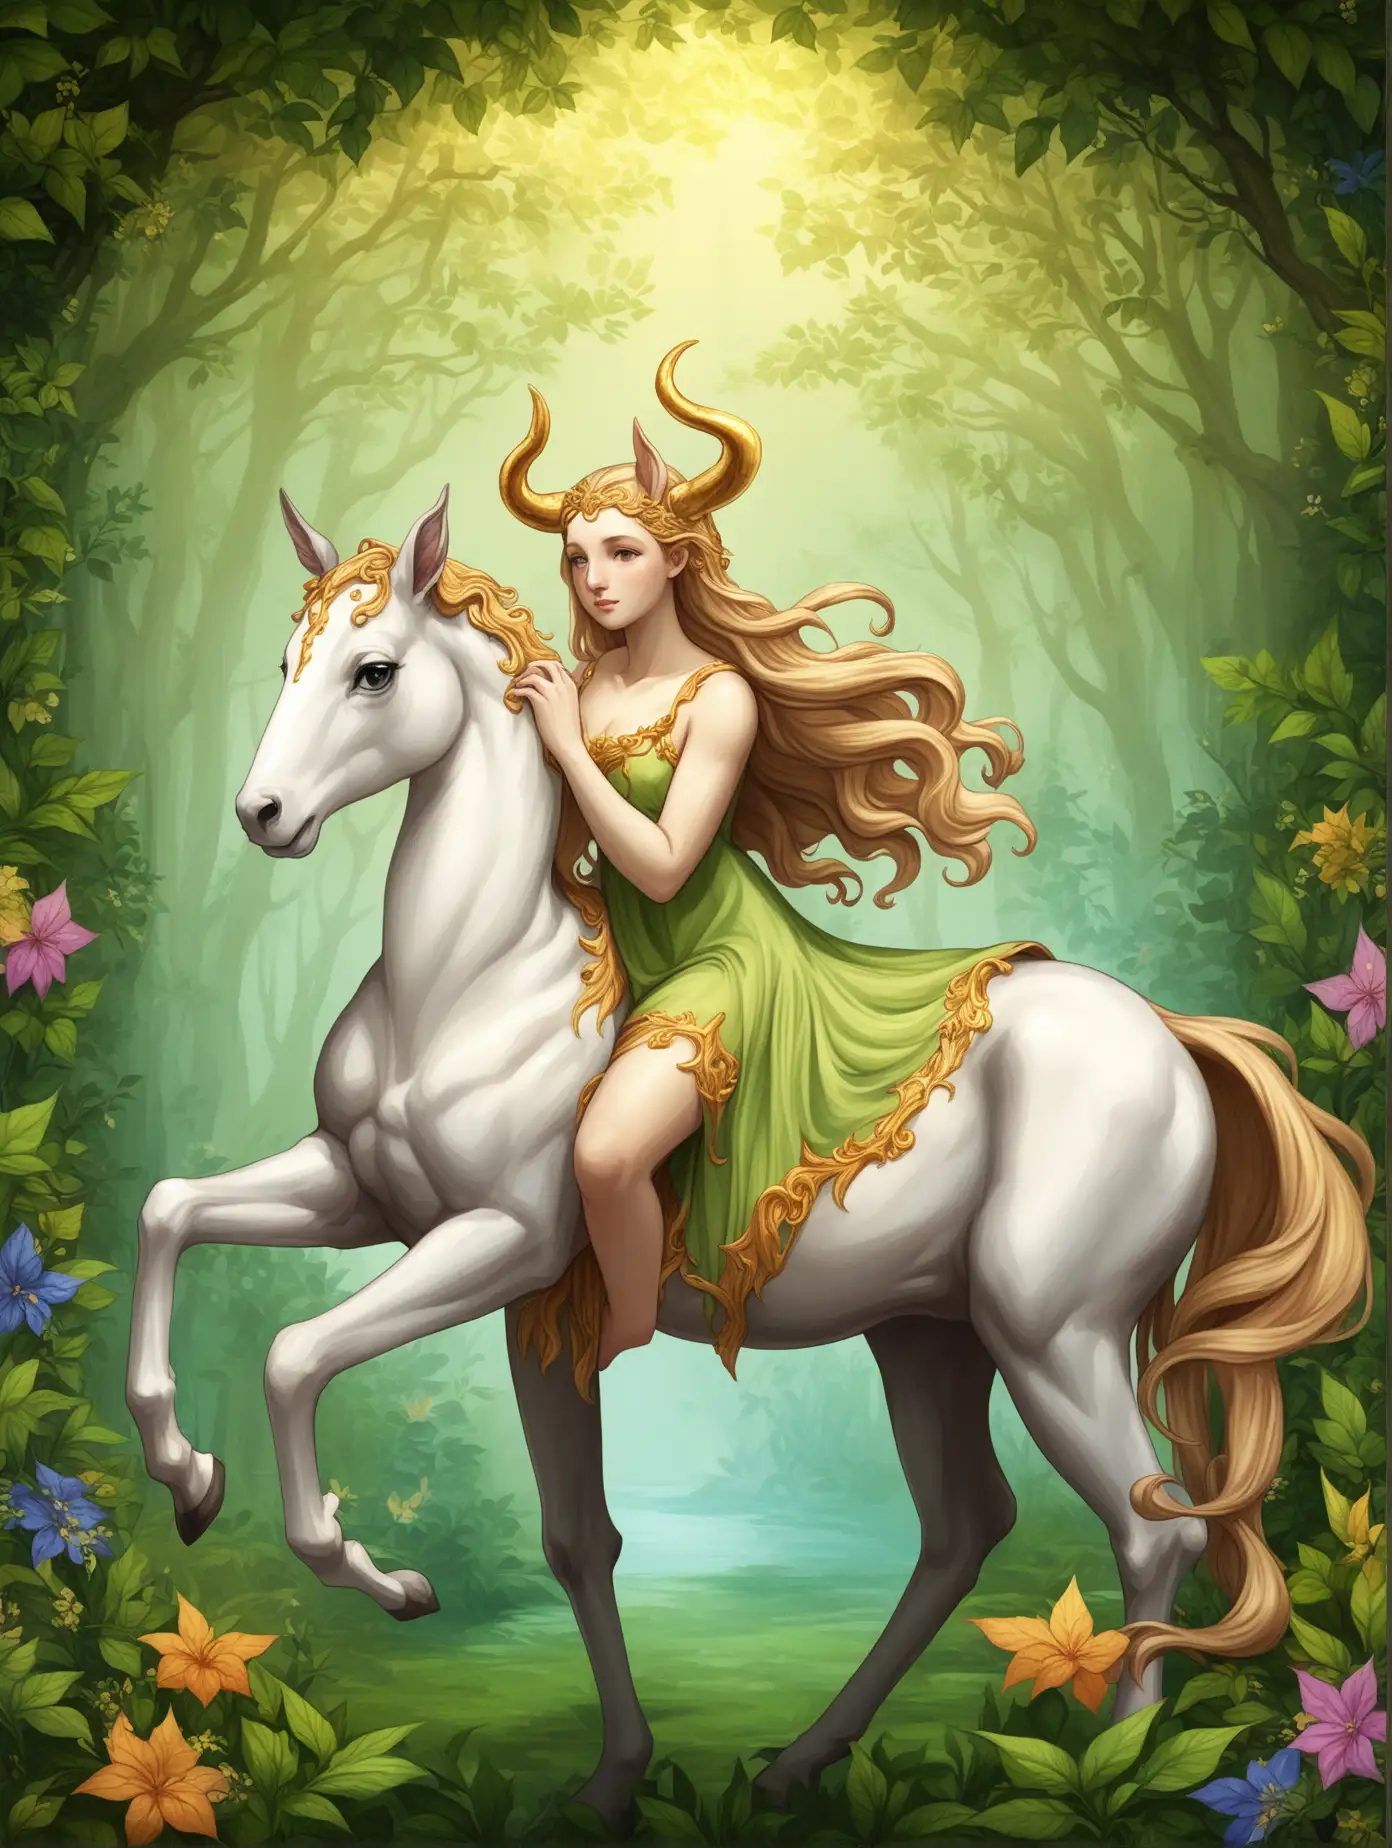 Mythological-Female-Centaur-in-Lush-Forest-Setting